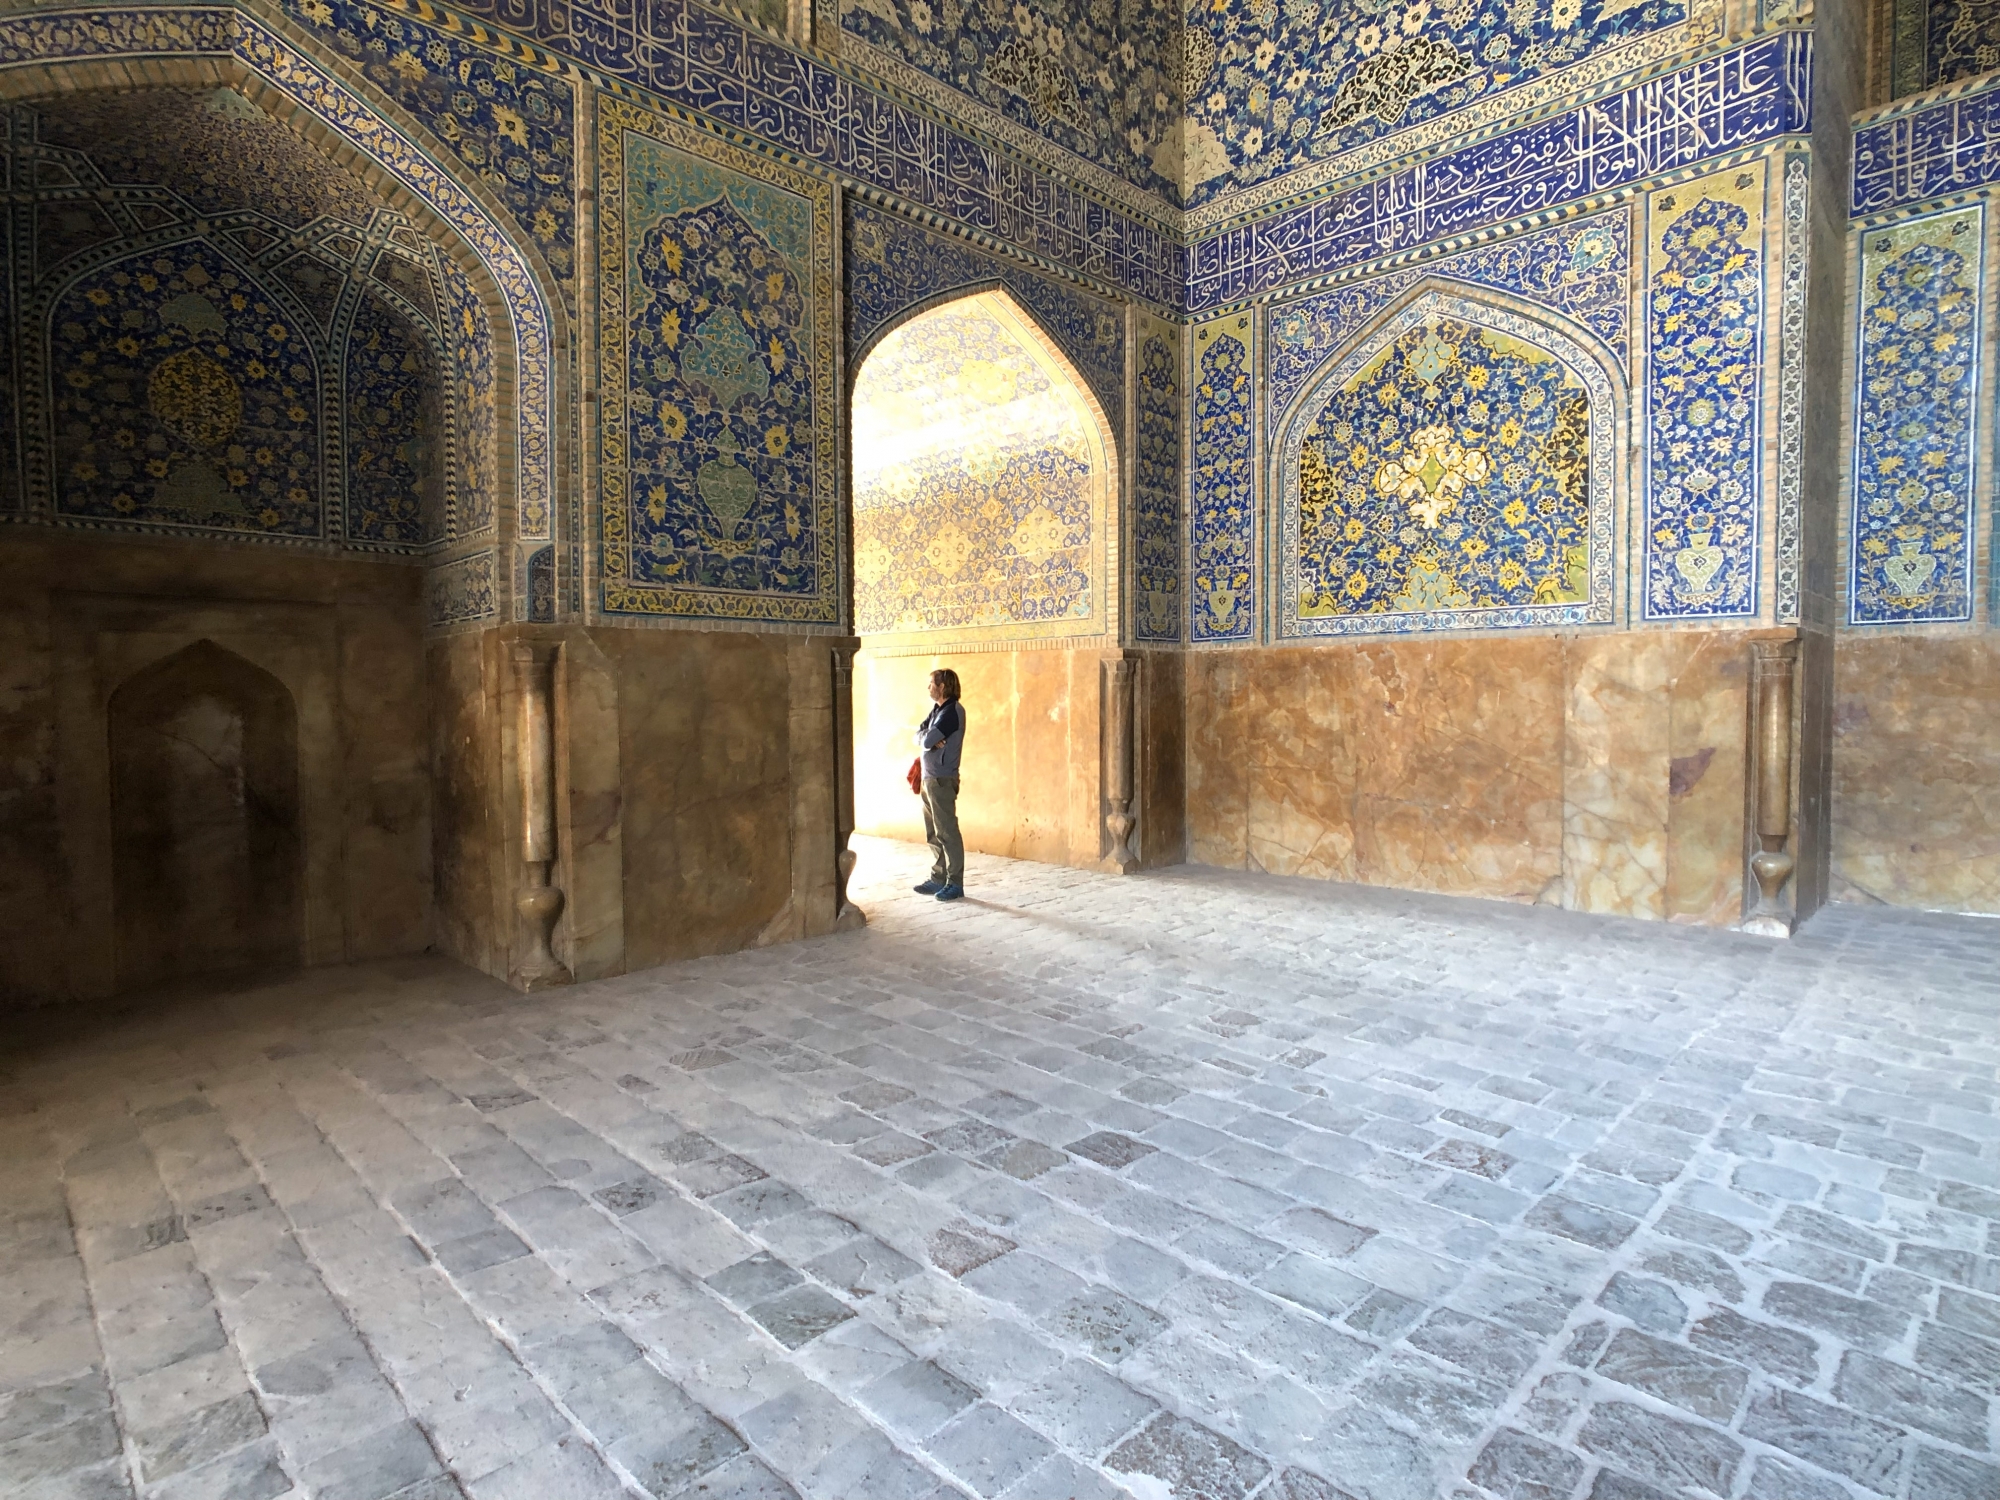 Blaue Moschee in Isfahan, Iran.